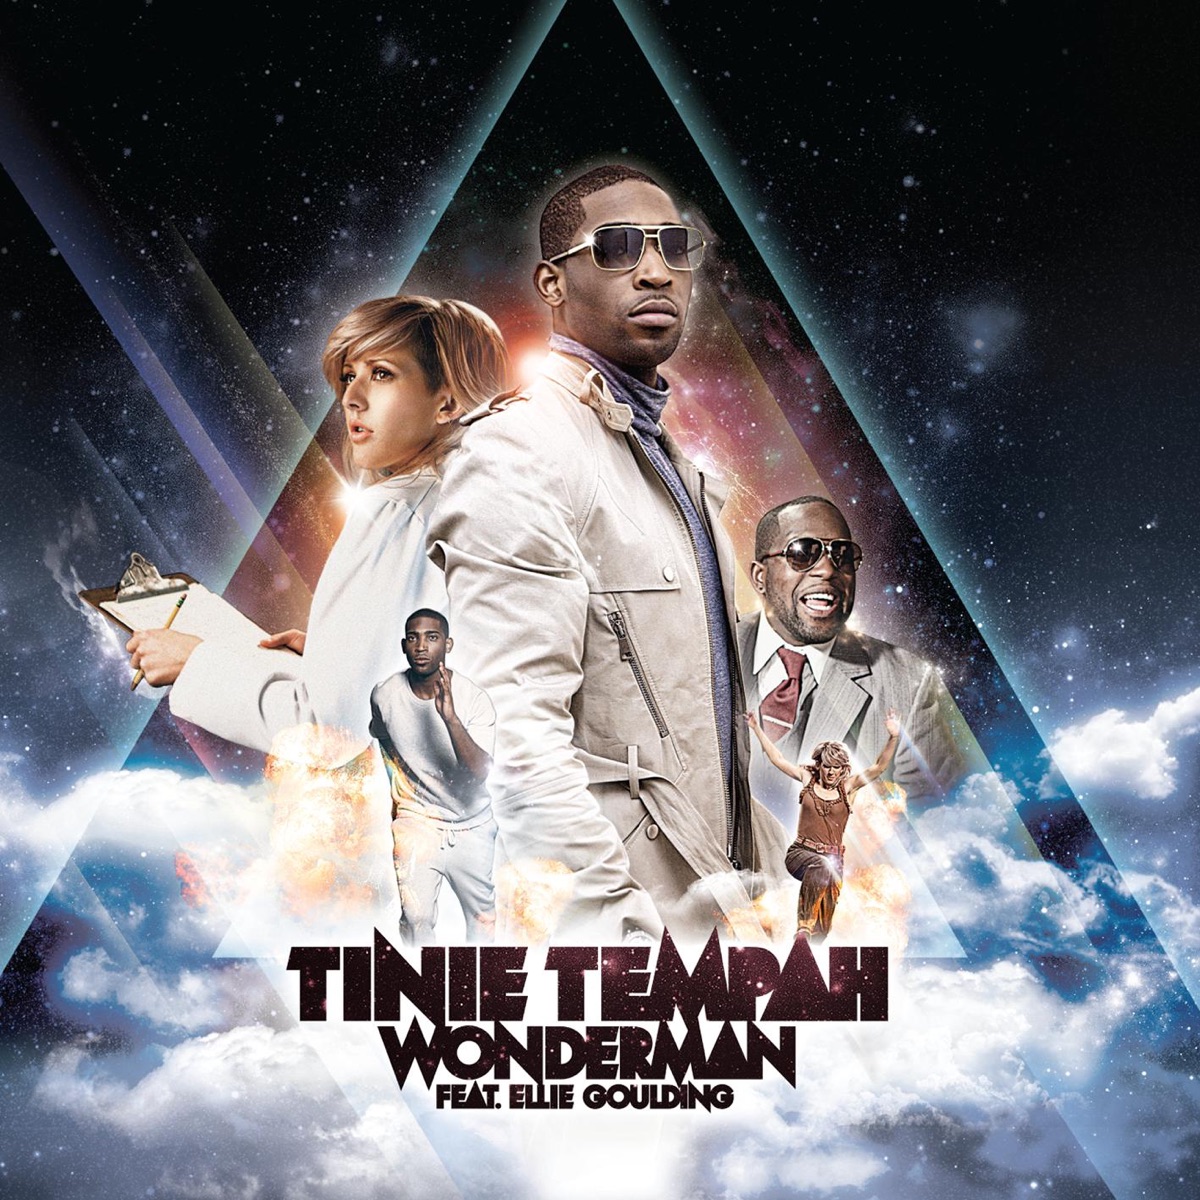 Tinie Tempah featuring Ellie Goulding — Wonderman cover artwork